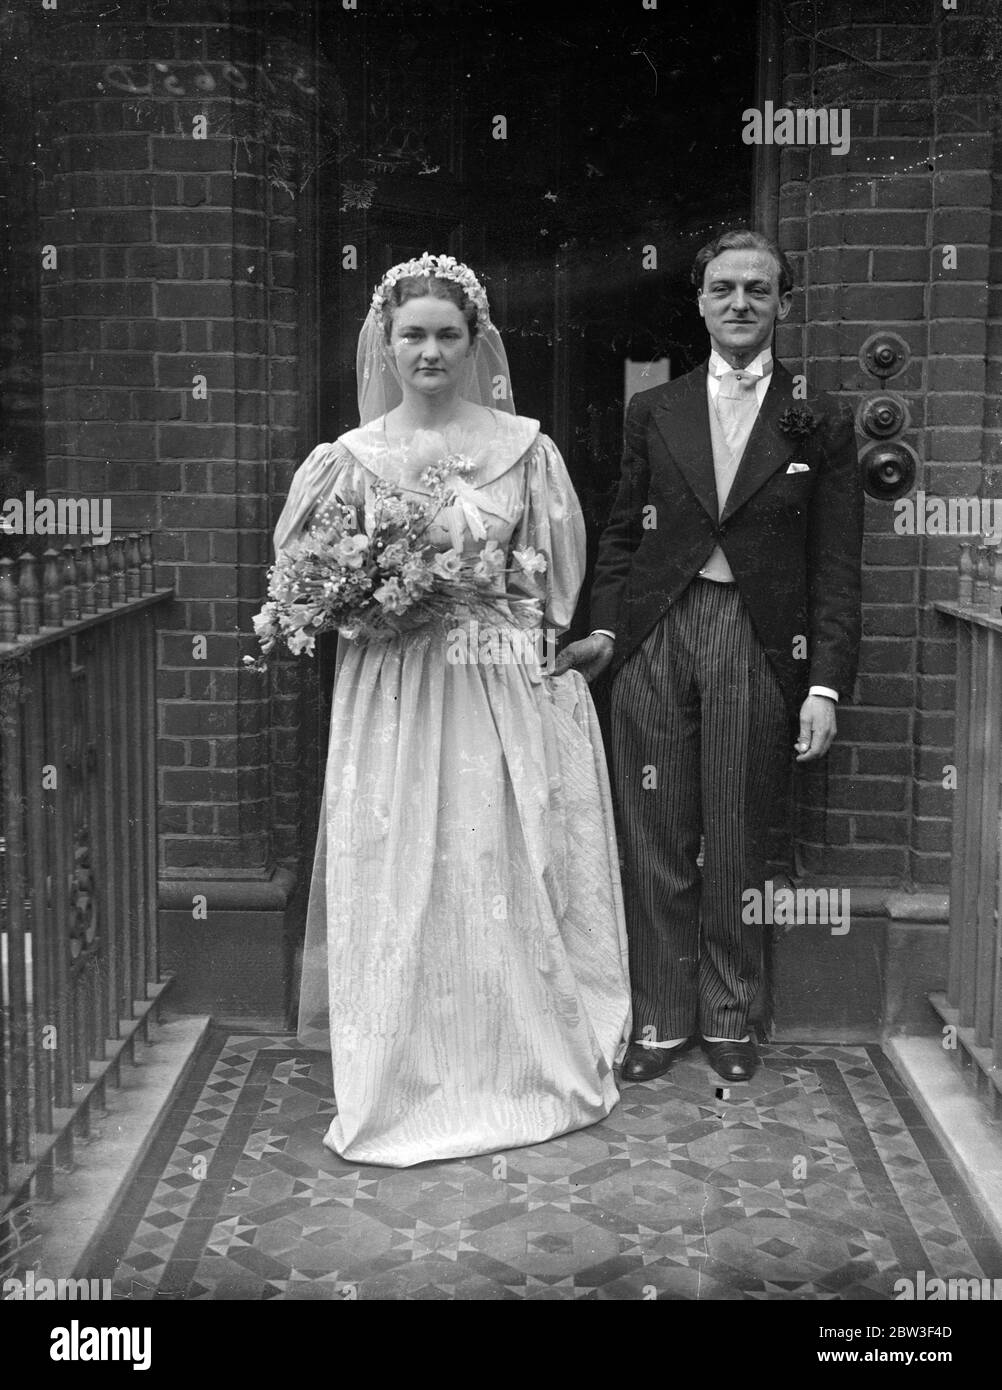 Le mariage de Mlle Mary Casson , actrice fille de Dame Sybil Thorndike et  de M. Lewis Casson , à M. William Bevlin , le jeune acteur shakespearien ,  a eu lieu